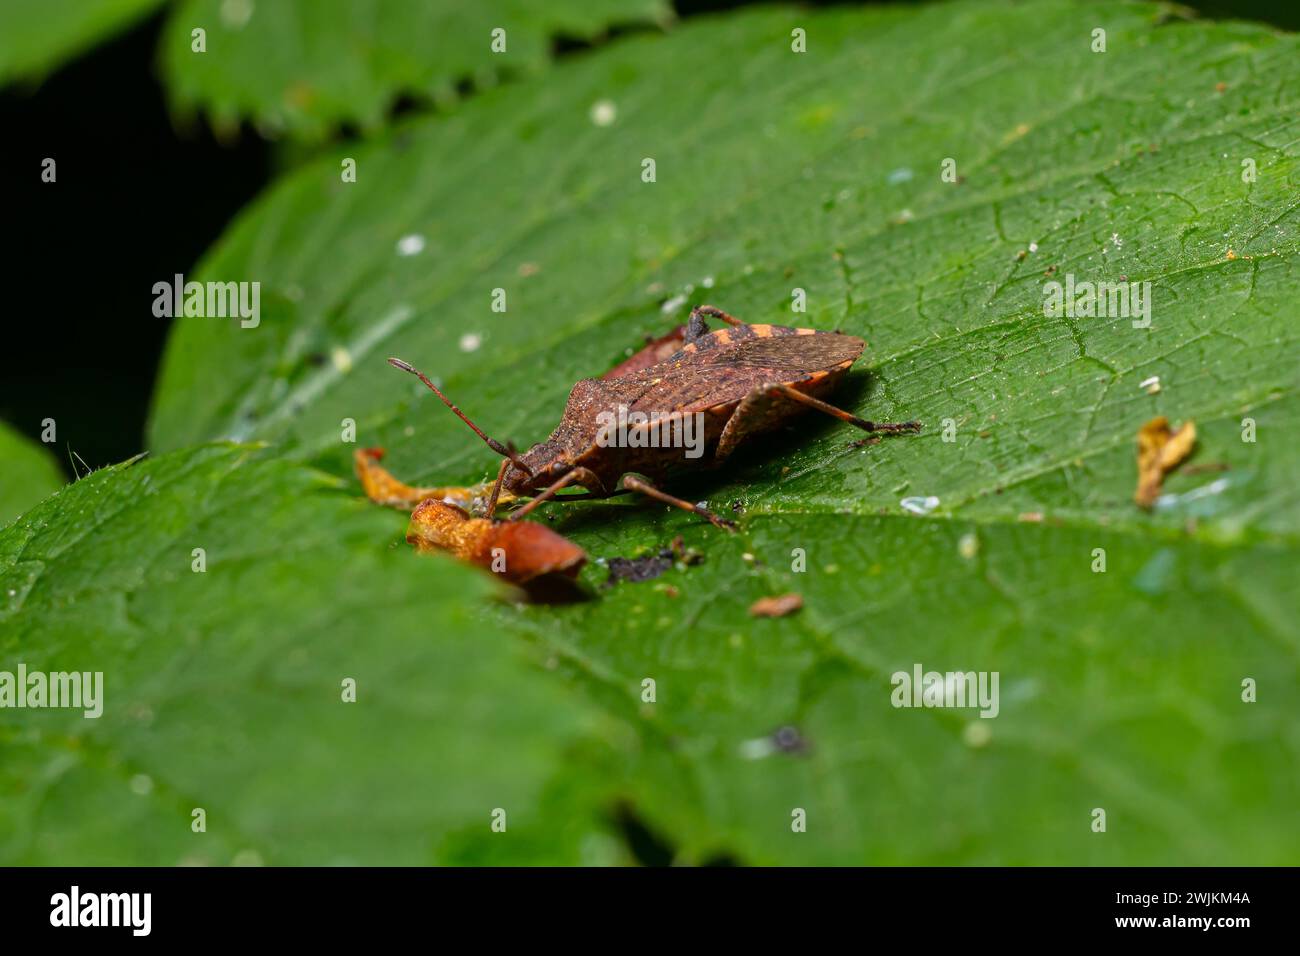 Eine Nahaufnahme eines braunen Waldkäfers oder eines rotbeinigen Schildkäfers auf einem grünen Blatt, Pentatoma rufipes. Stockfoto